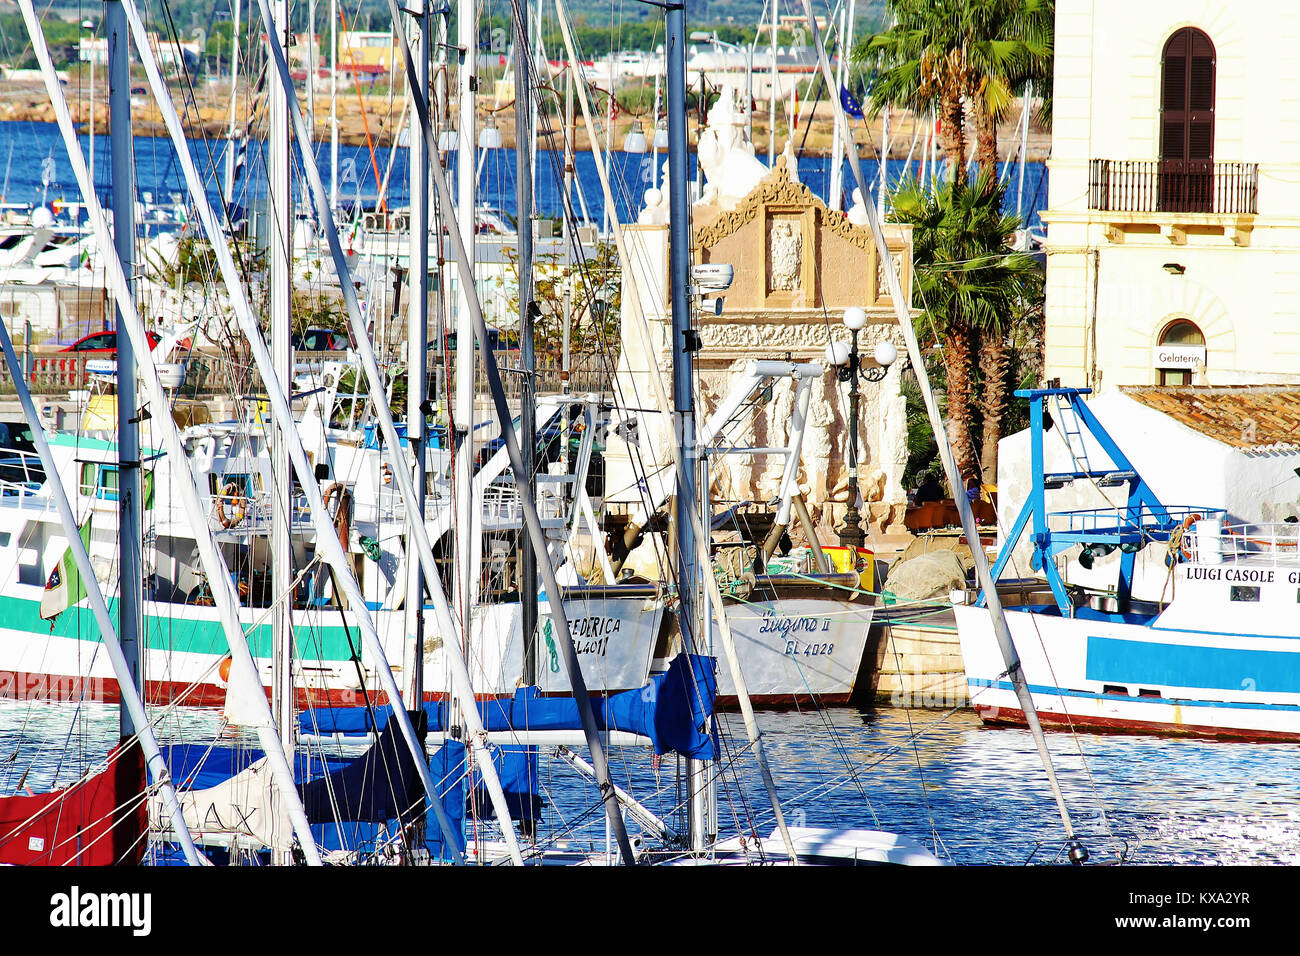 Porto vecchio di Gallipoli veduta delle barche e della fontana greca Stock Photo